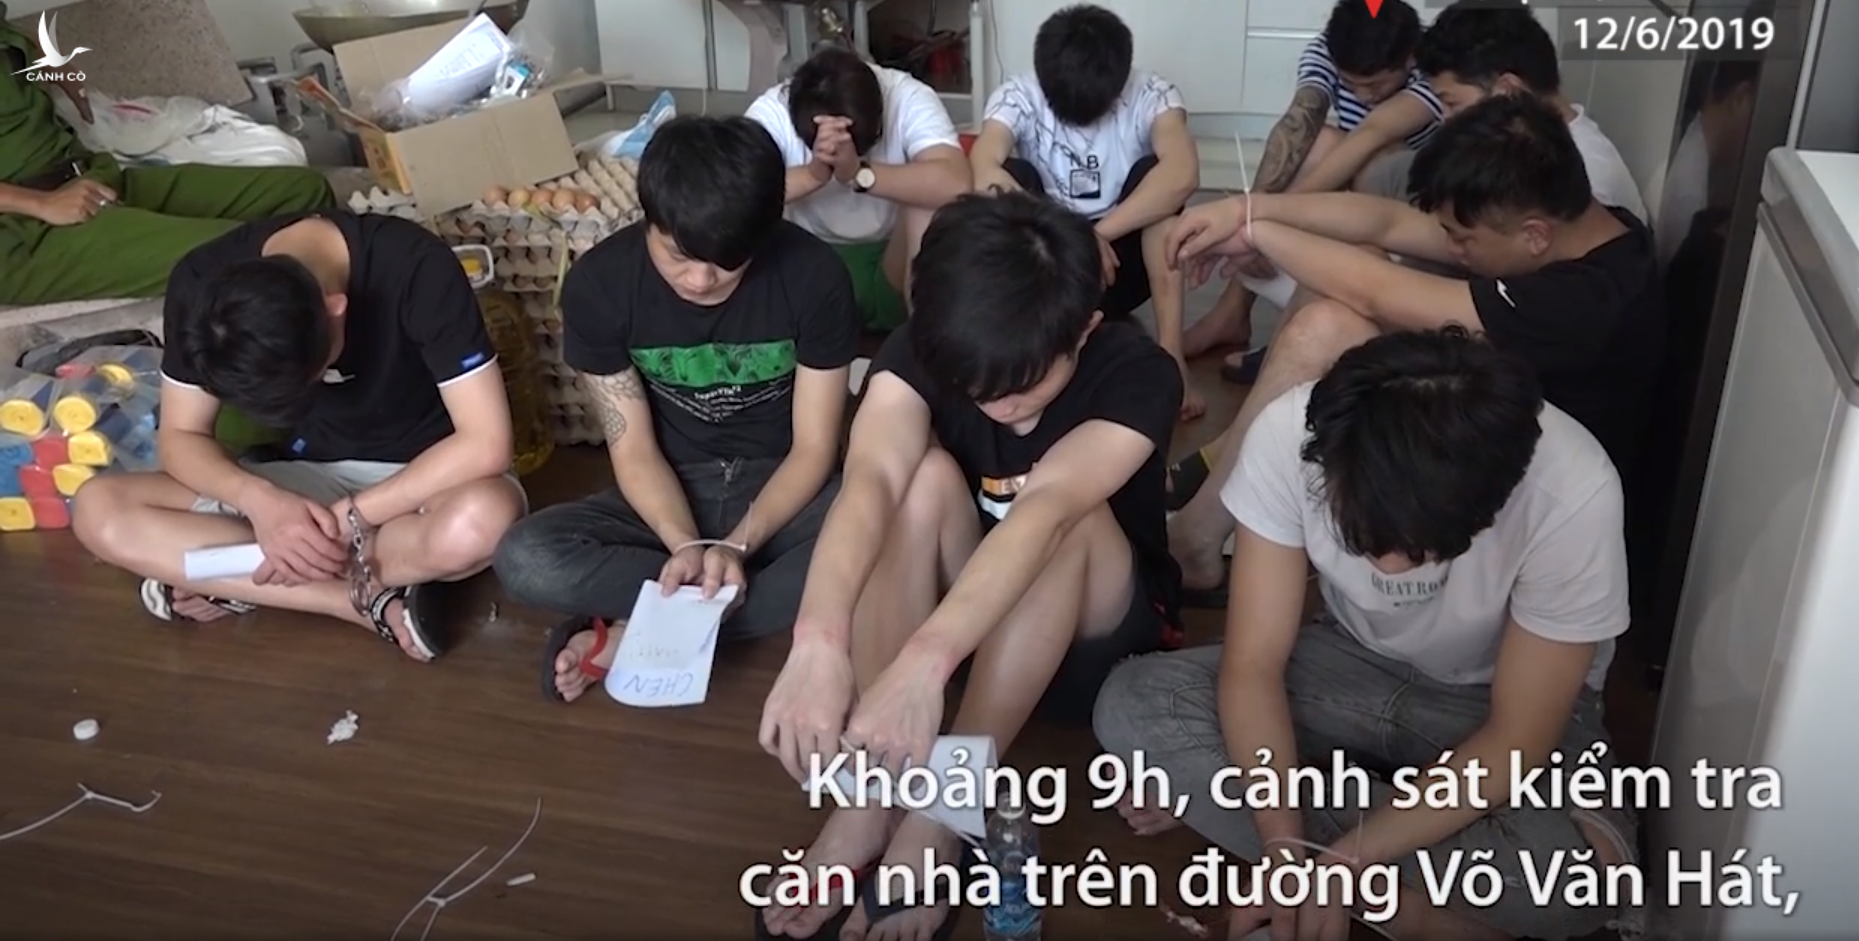 Nhóm người Trung Quốc thuê nhà ở Sài Gòn để giả cảnh sát lừa đảo 